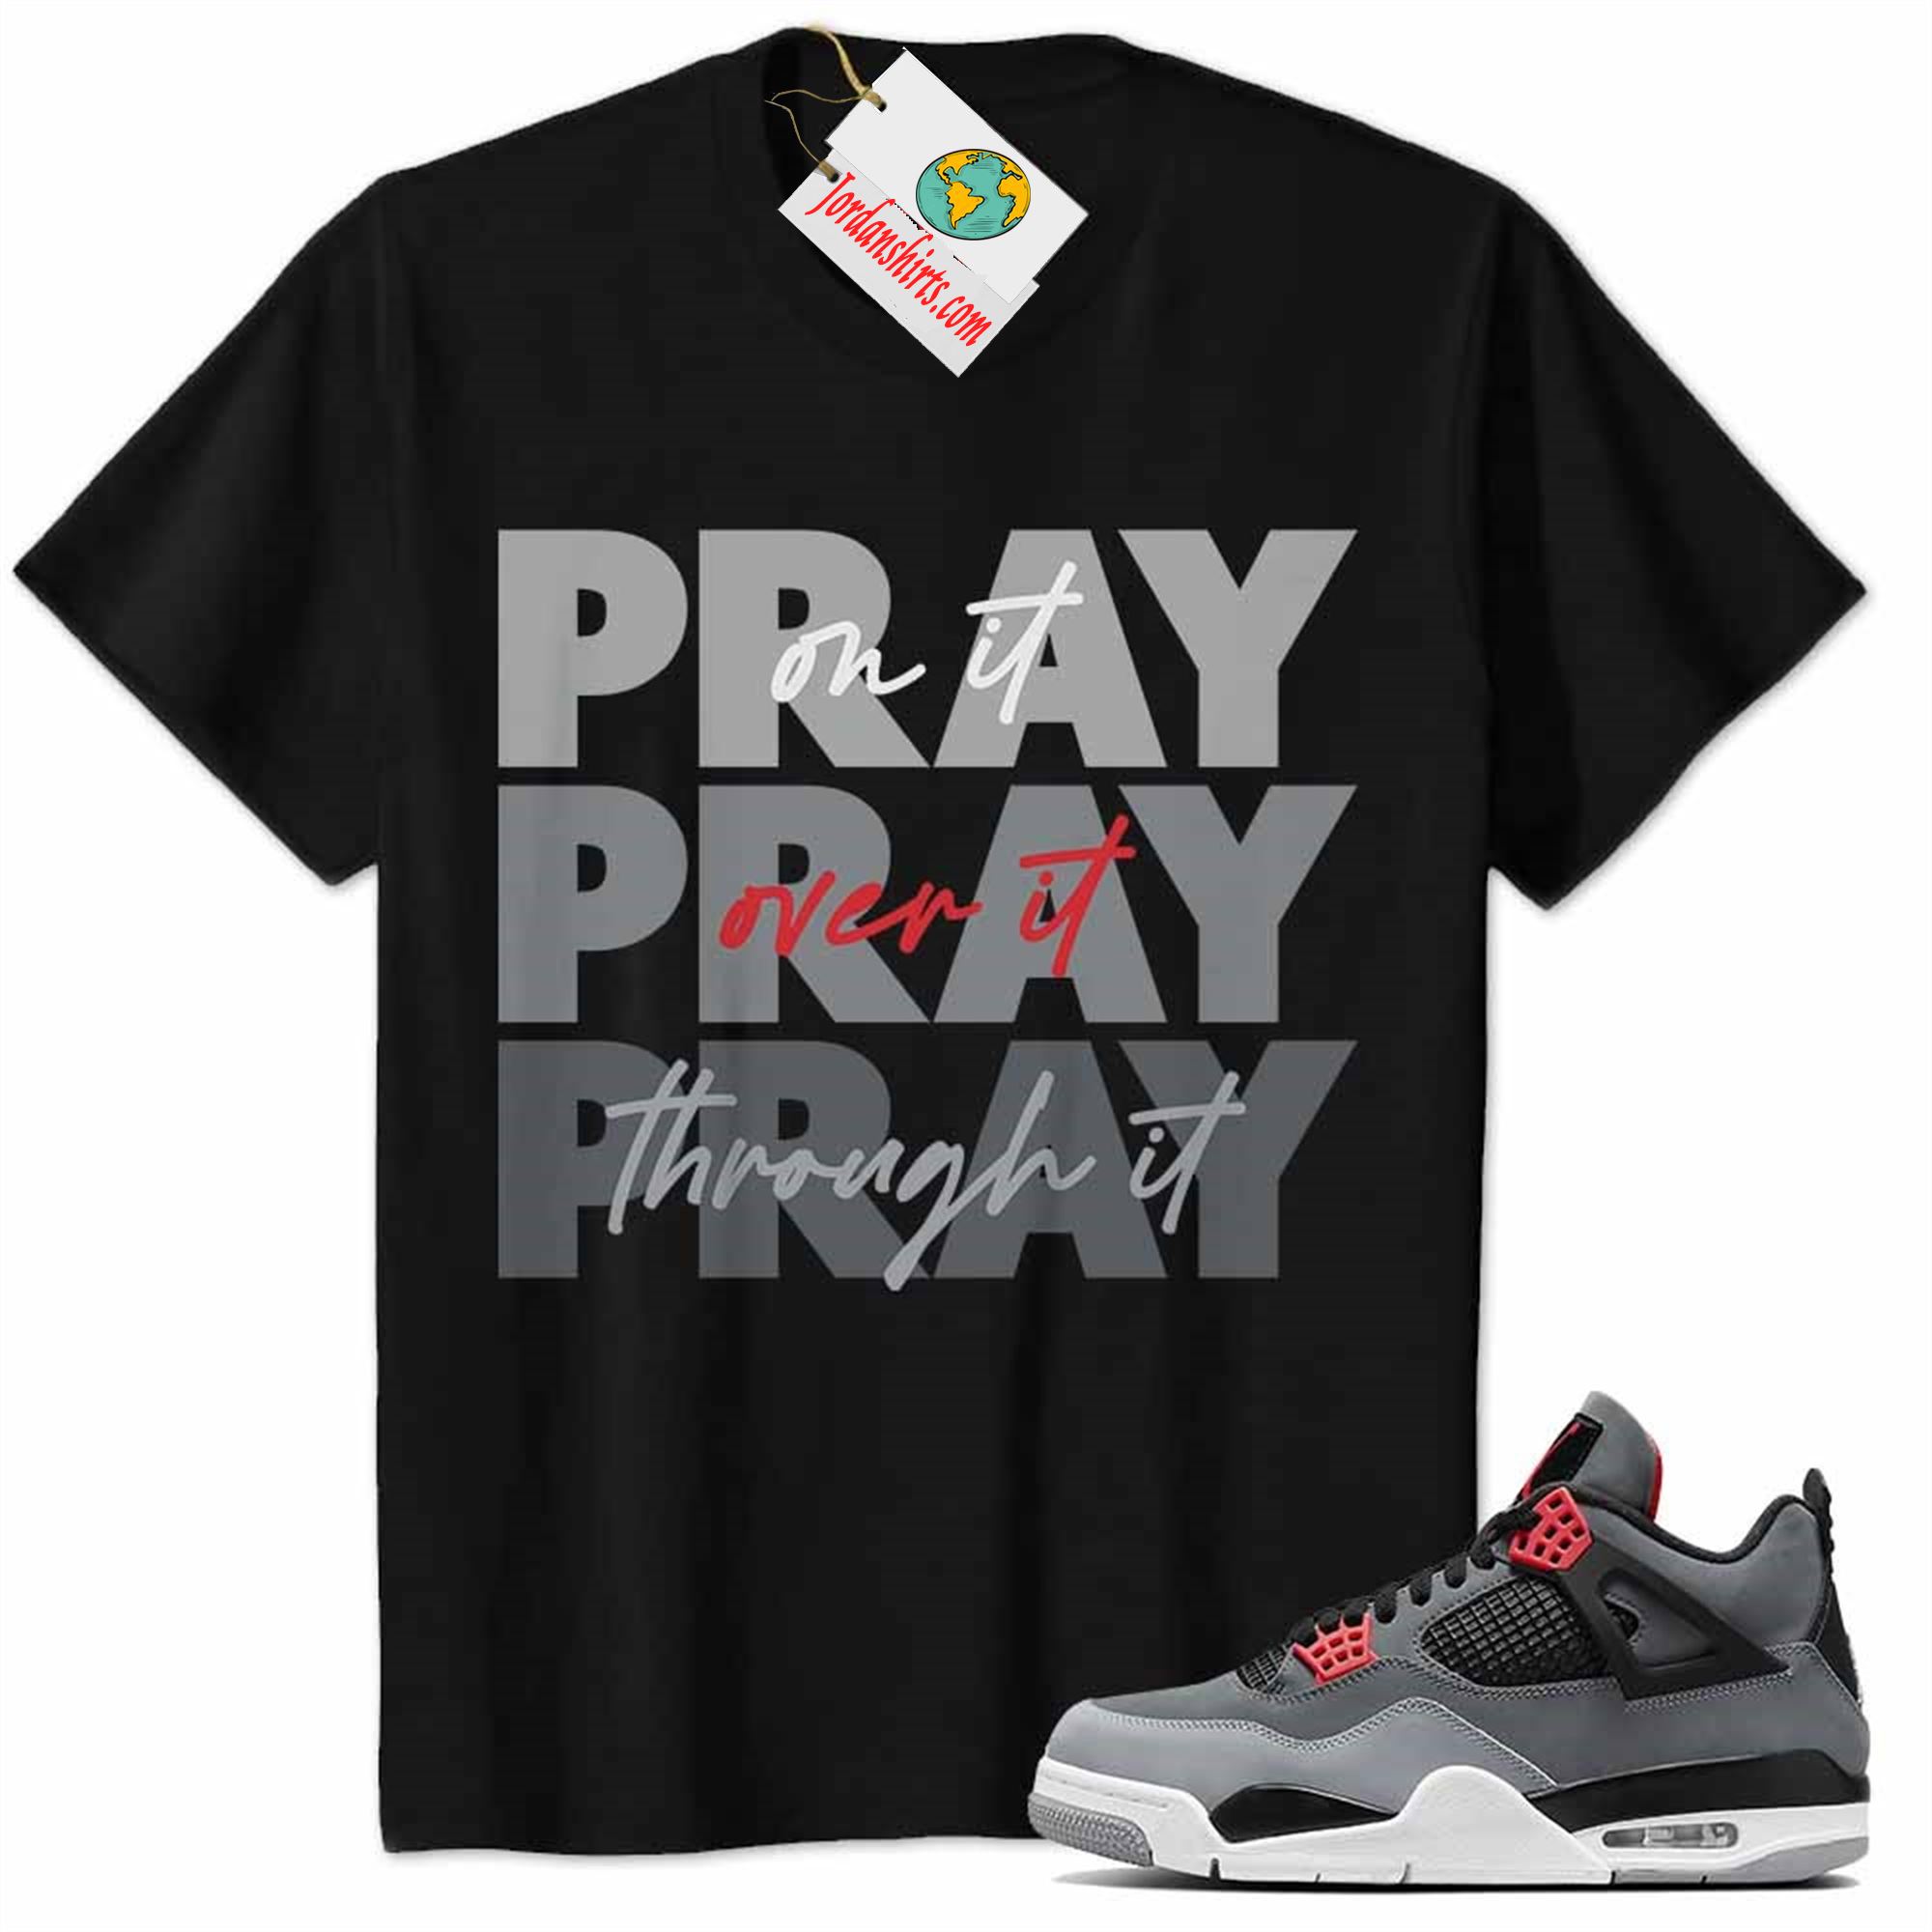 Jordan 4 Shirt, Jordan 4 Infrared 23 Shirt Shirt Pray On It Pray Over It Pray Through It Black Full Size Up To 5xl